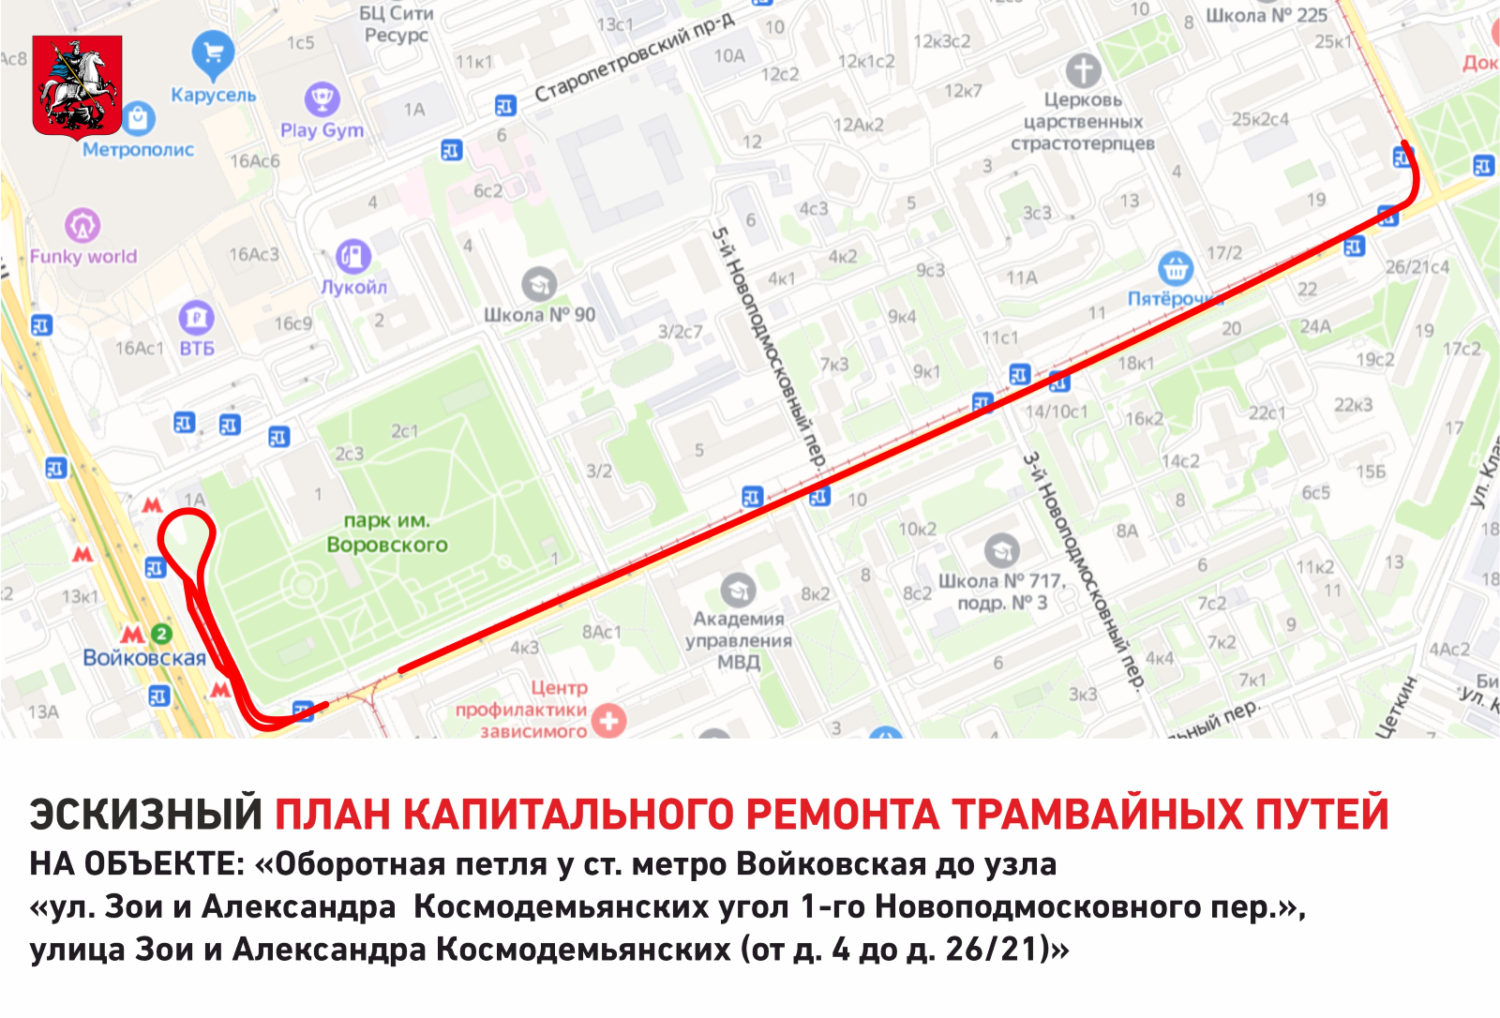 В Войковском районе проведут капитальный ремонт более 3 км трамвайных путей